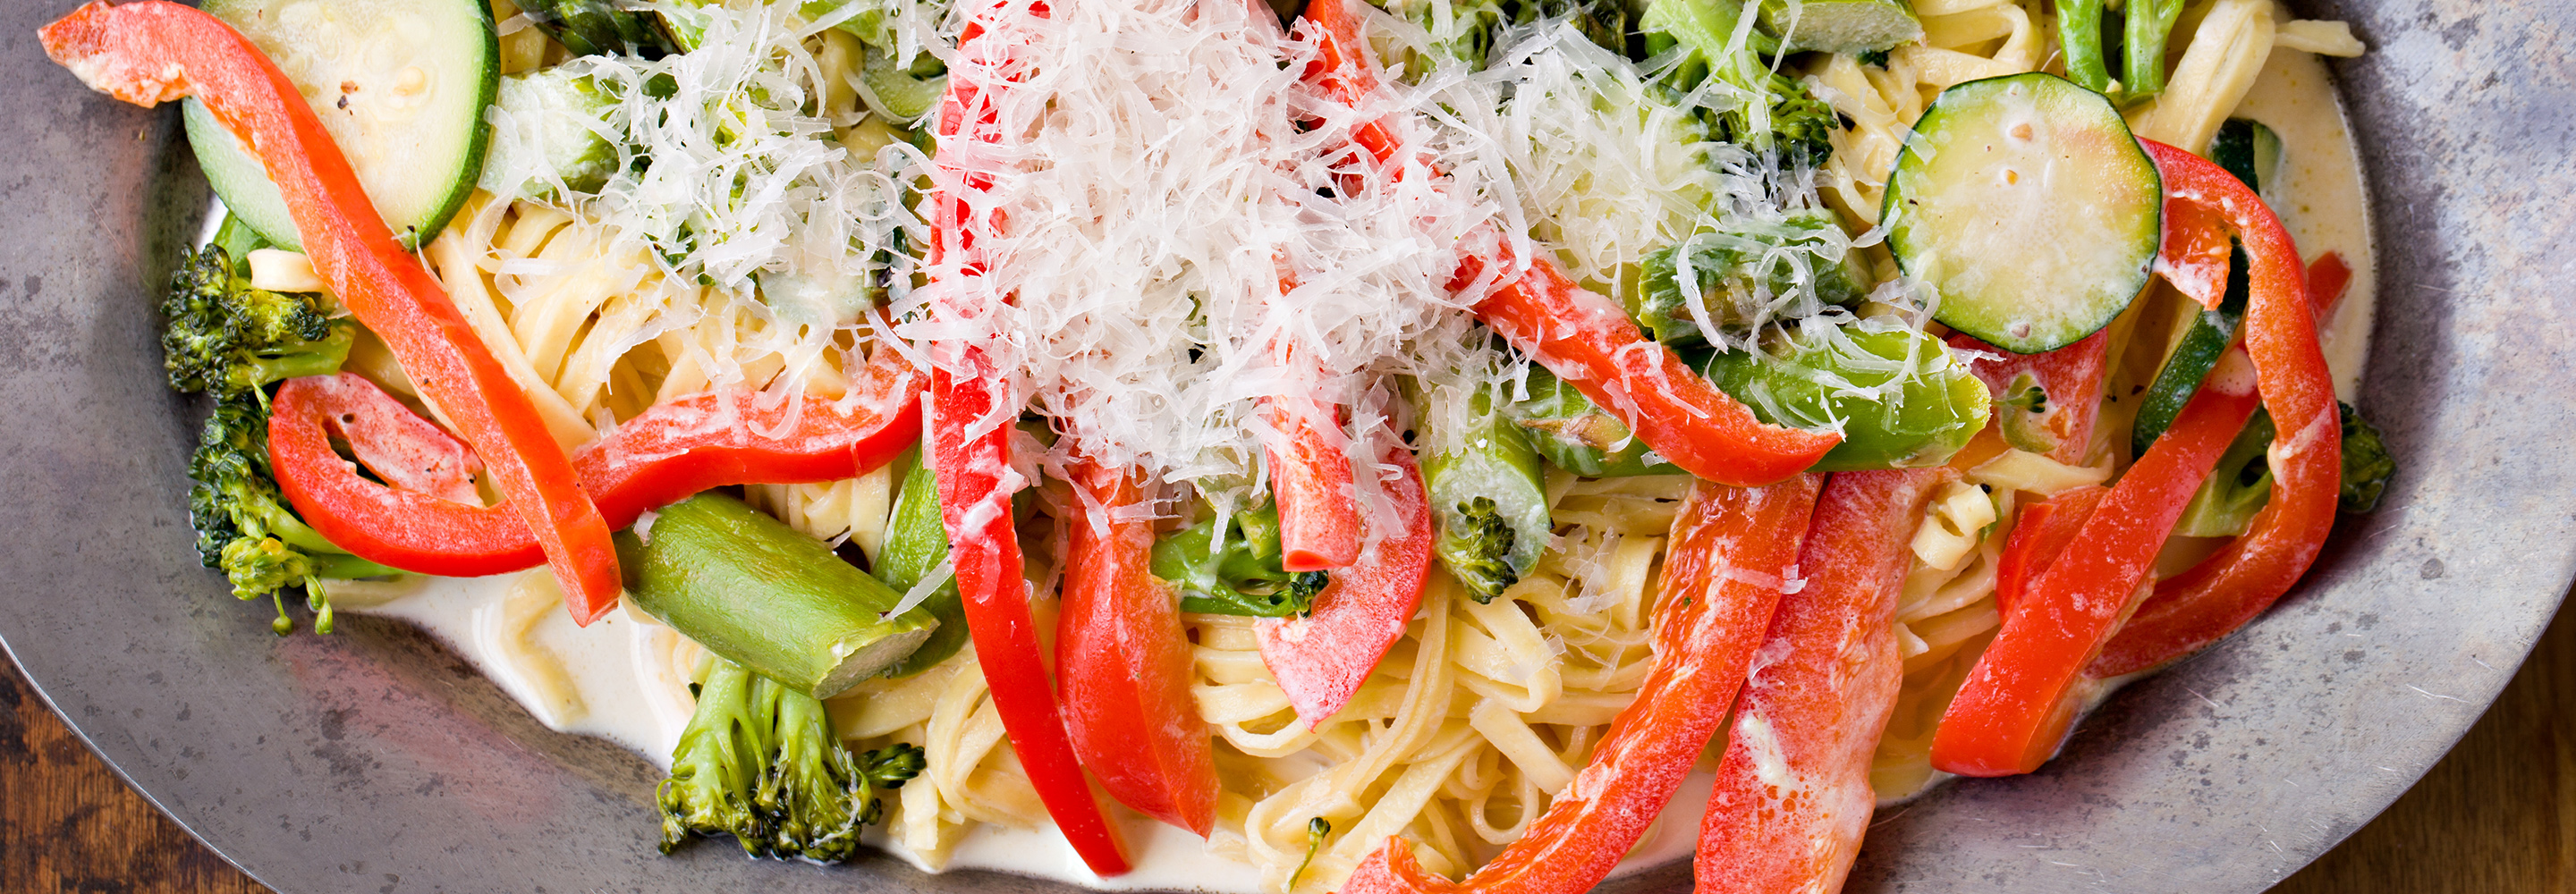 Ciepłe spaghetti z warzywami - Galbani – od ponad 130 lat dostarczamy najlepsze włoskie smaki na talerze całego świata